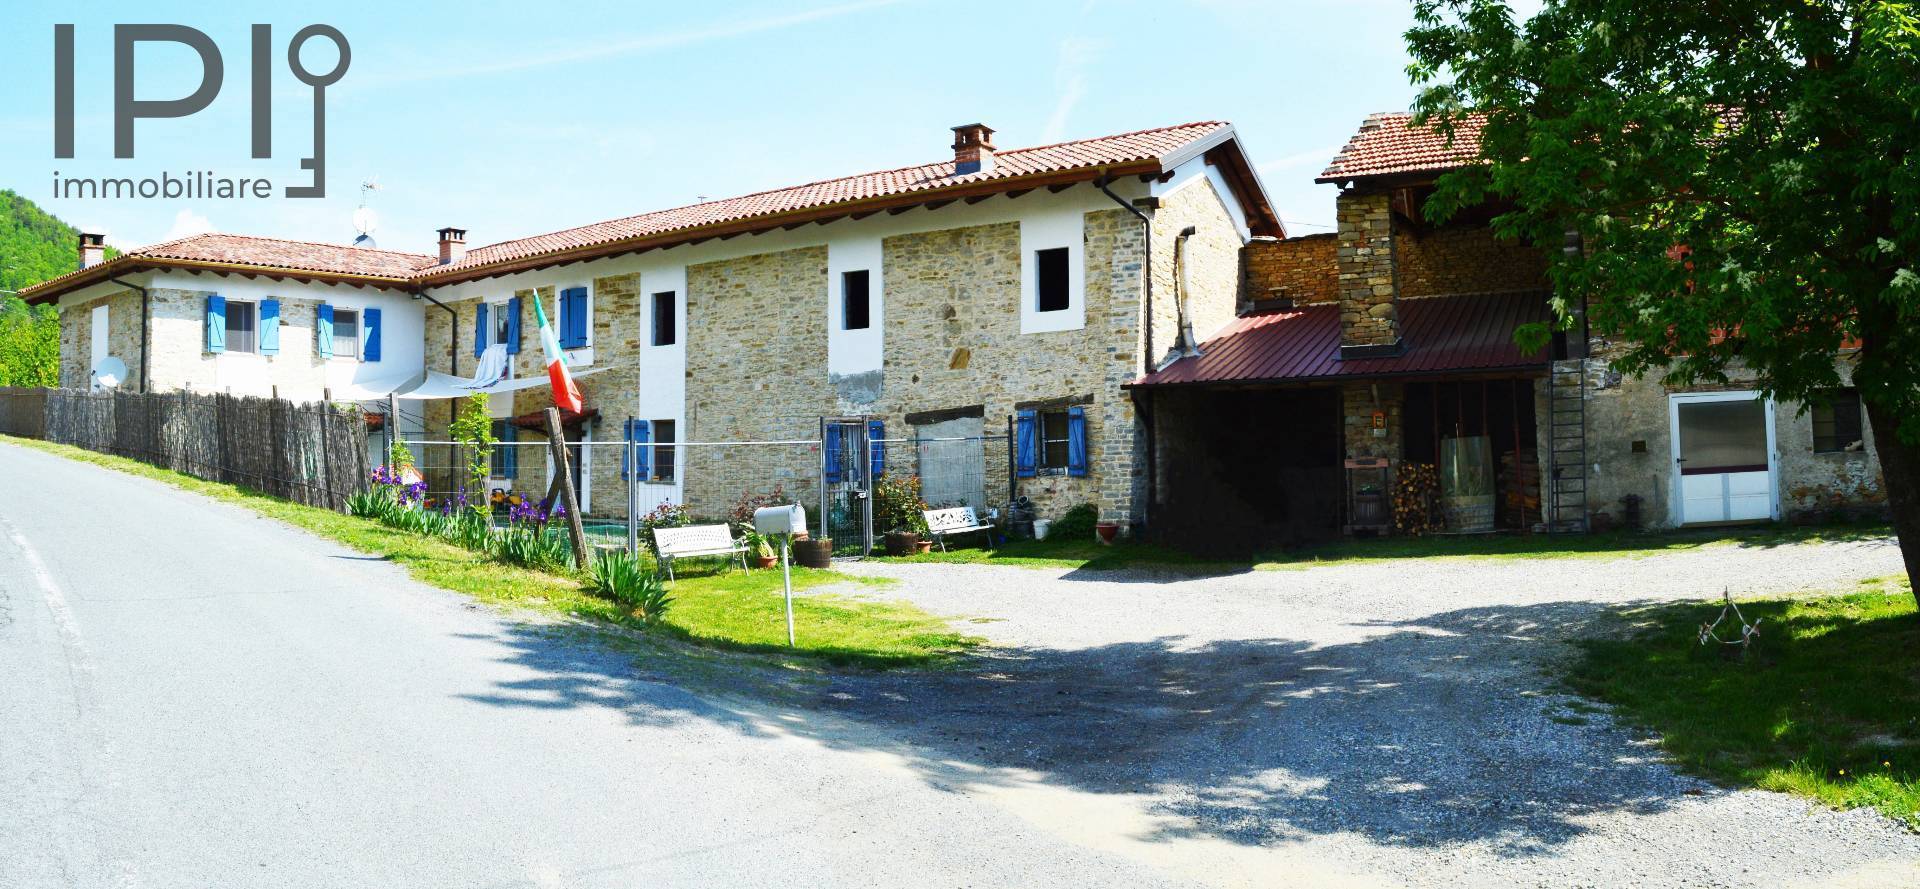 Rustico / Casale in vendita a Denice, 15 locali, zona Località: PianiSuperiori, prezzo € 420.000 | PortaleAgenzieImmobiliari.it